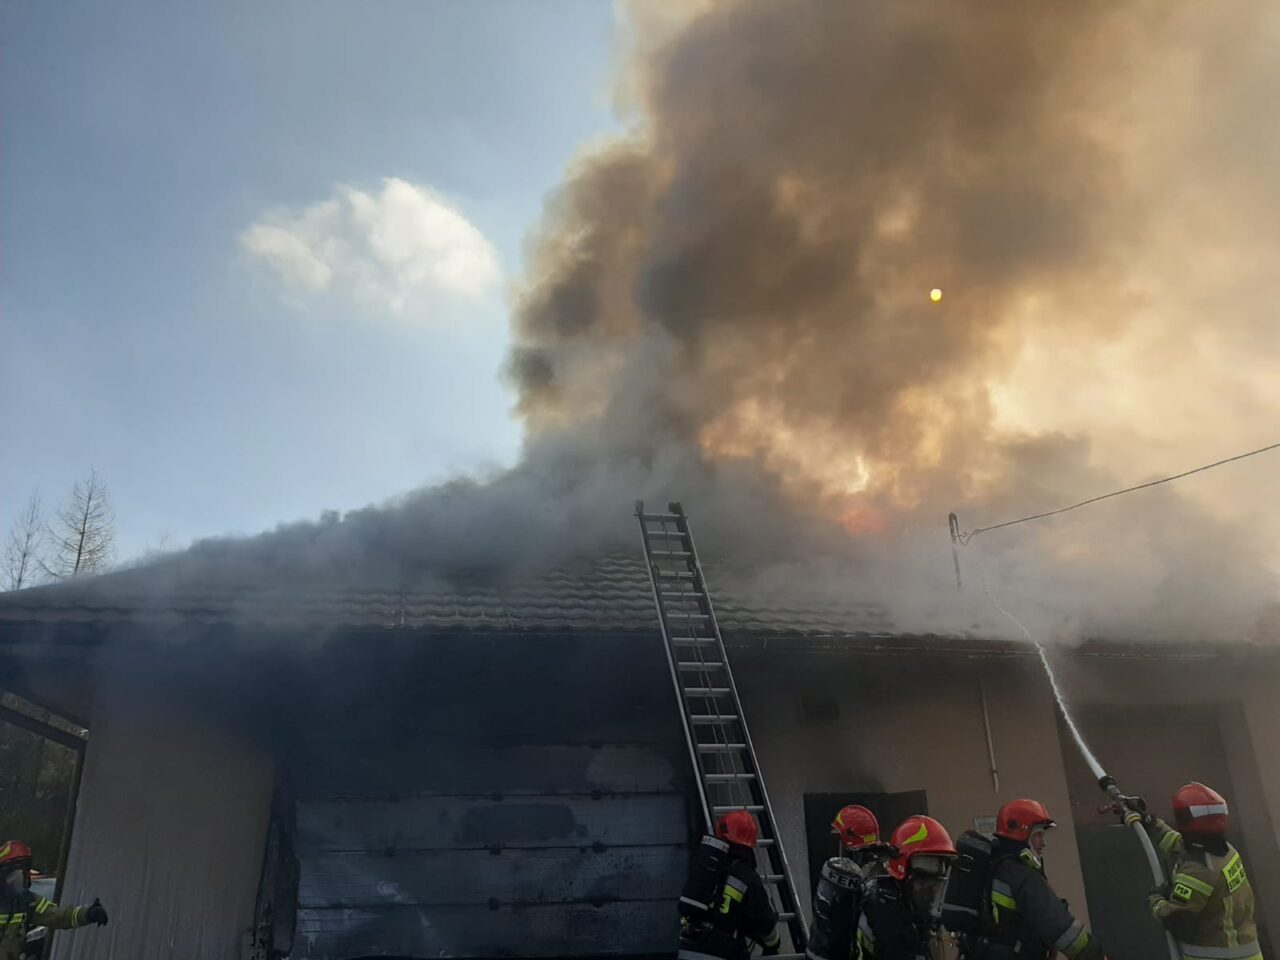 Strażacy gaszą pożar domu, z którego wydobywa się gęsty, ciemny dym. Na zdjęciu widać drabinę opartą o budynek i strumień wody kierowany na płomienie.